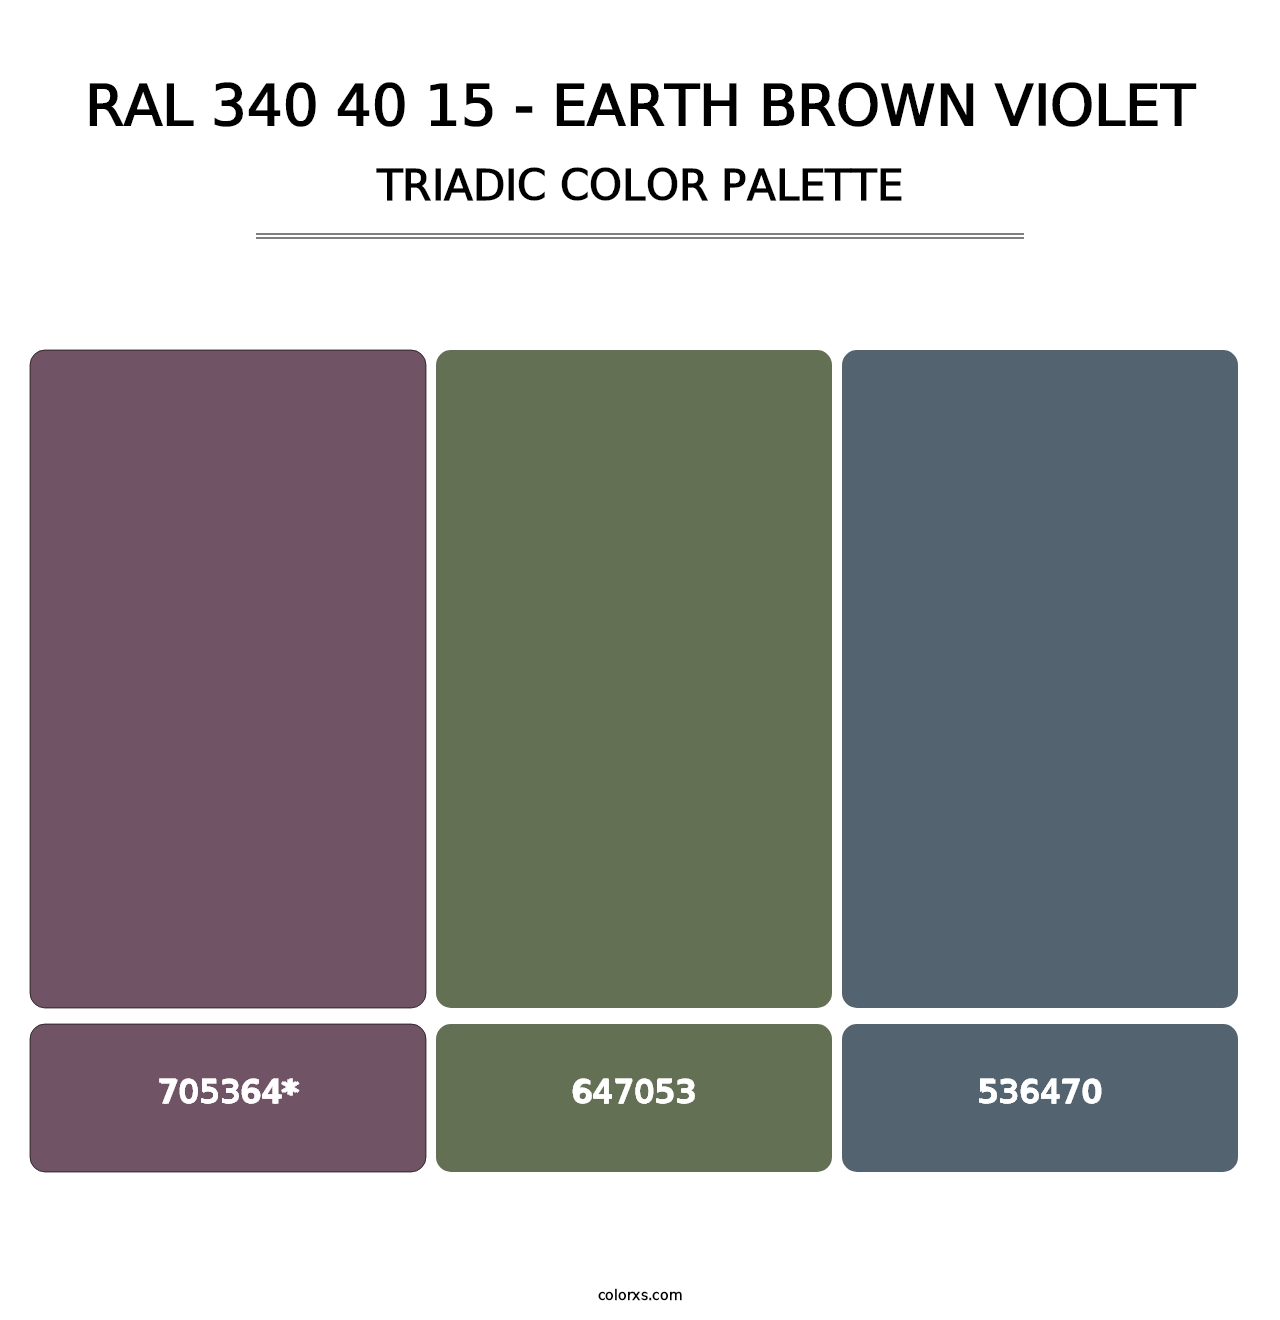 RAL 340 40 15 - Earth Brown Violet - Triadic Color Palette